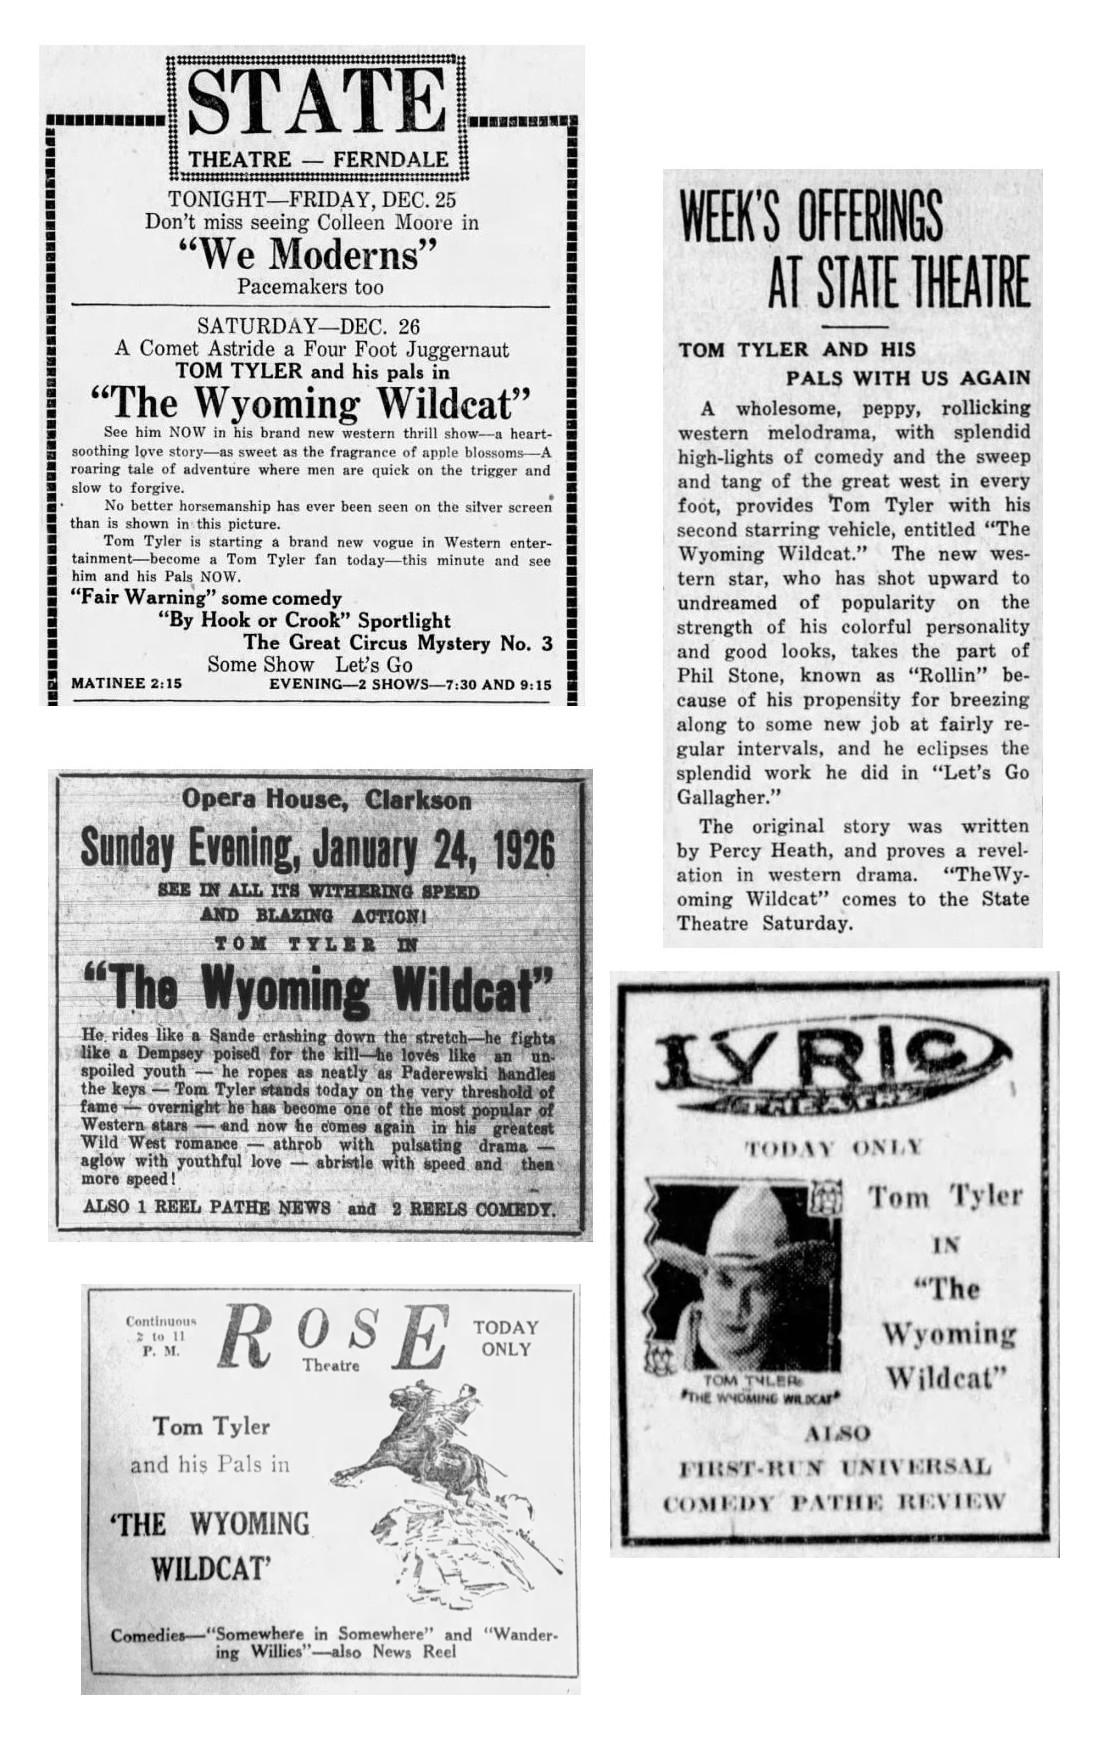 The Wyoming Wildcat cinema ads